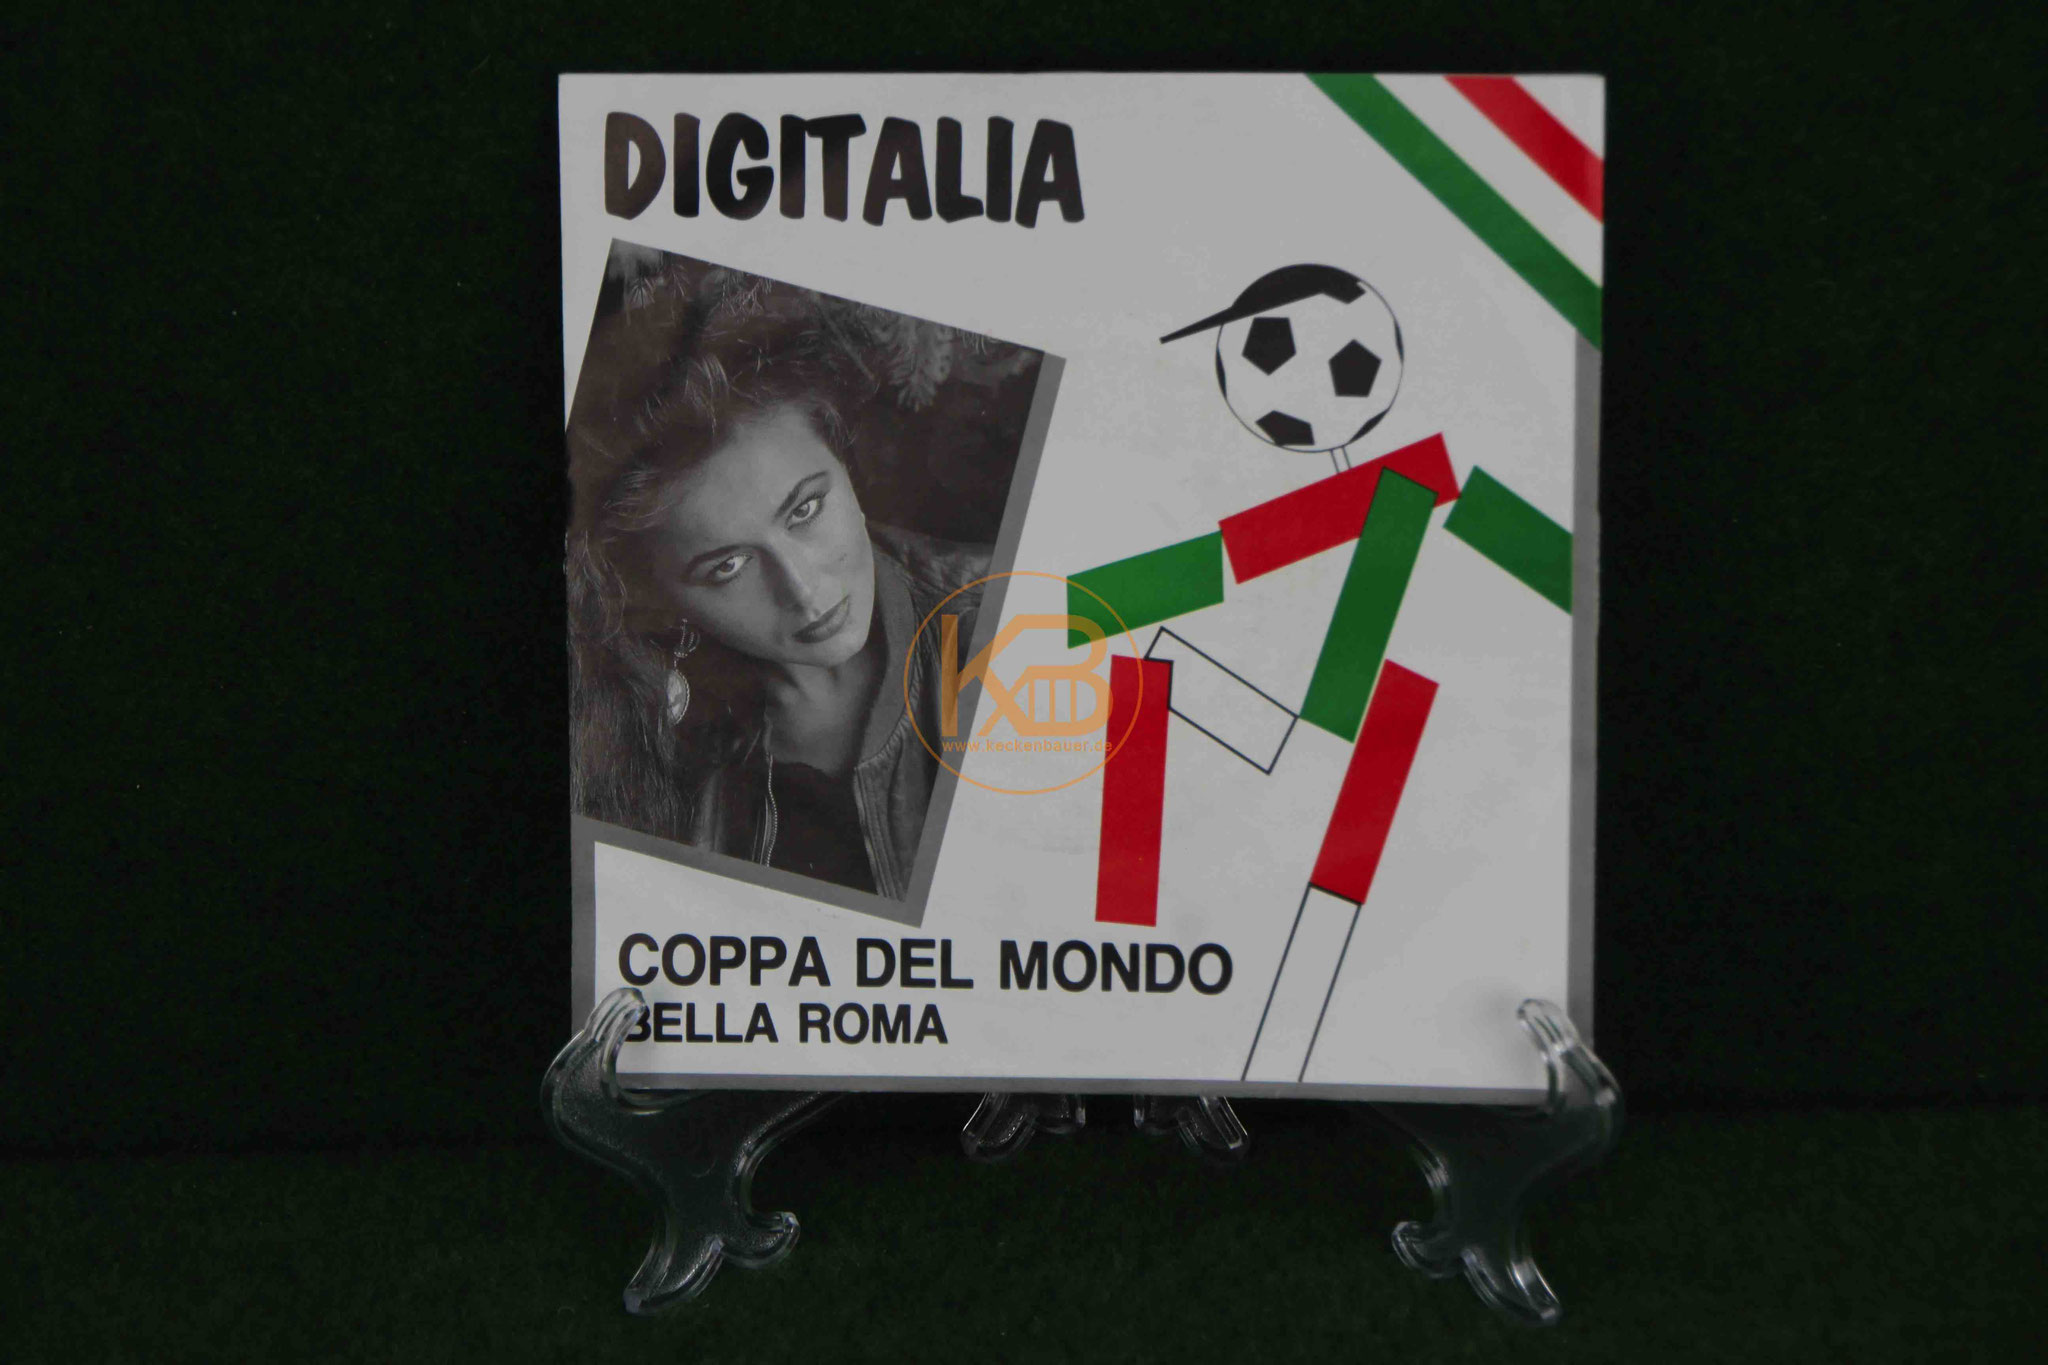 Single LP von Digitalia - Coppa del Mondo - zur Fussball WM 1990